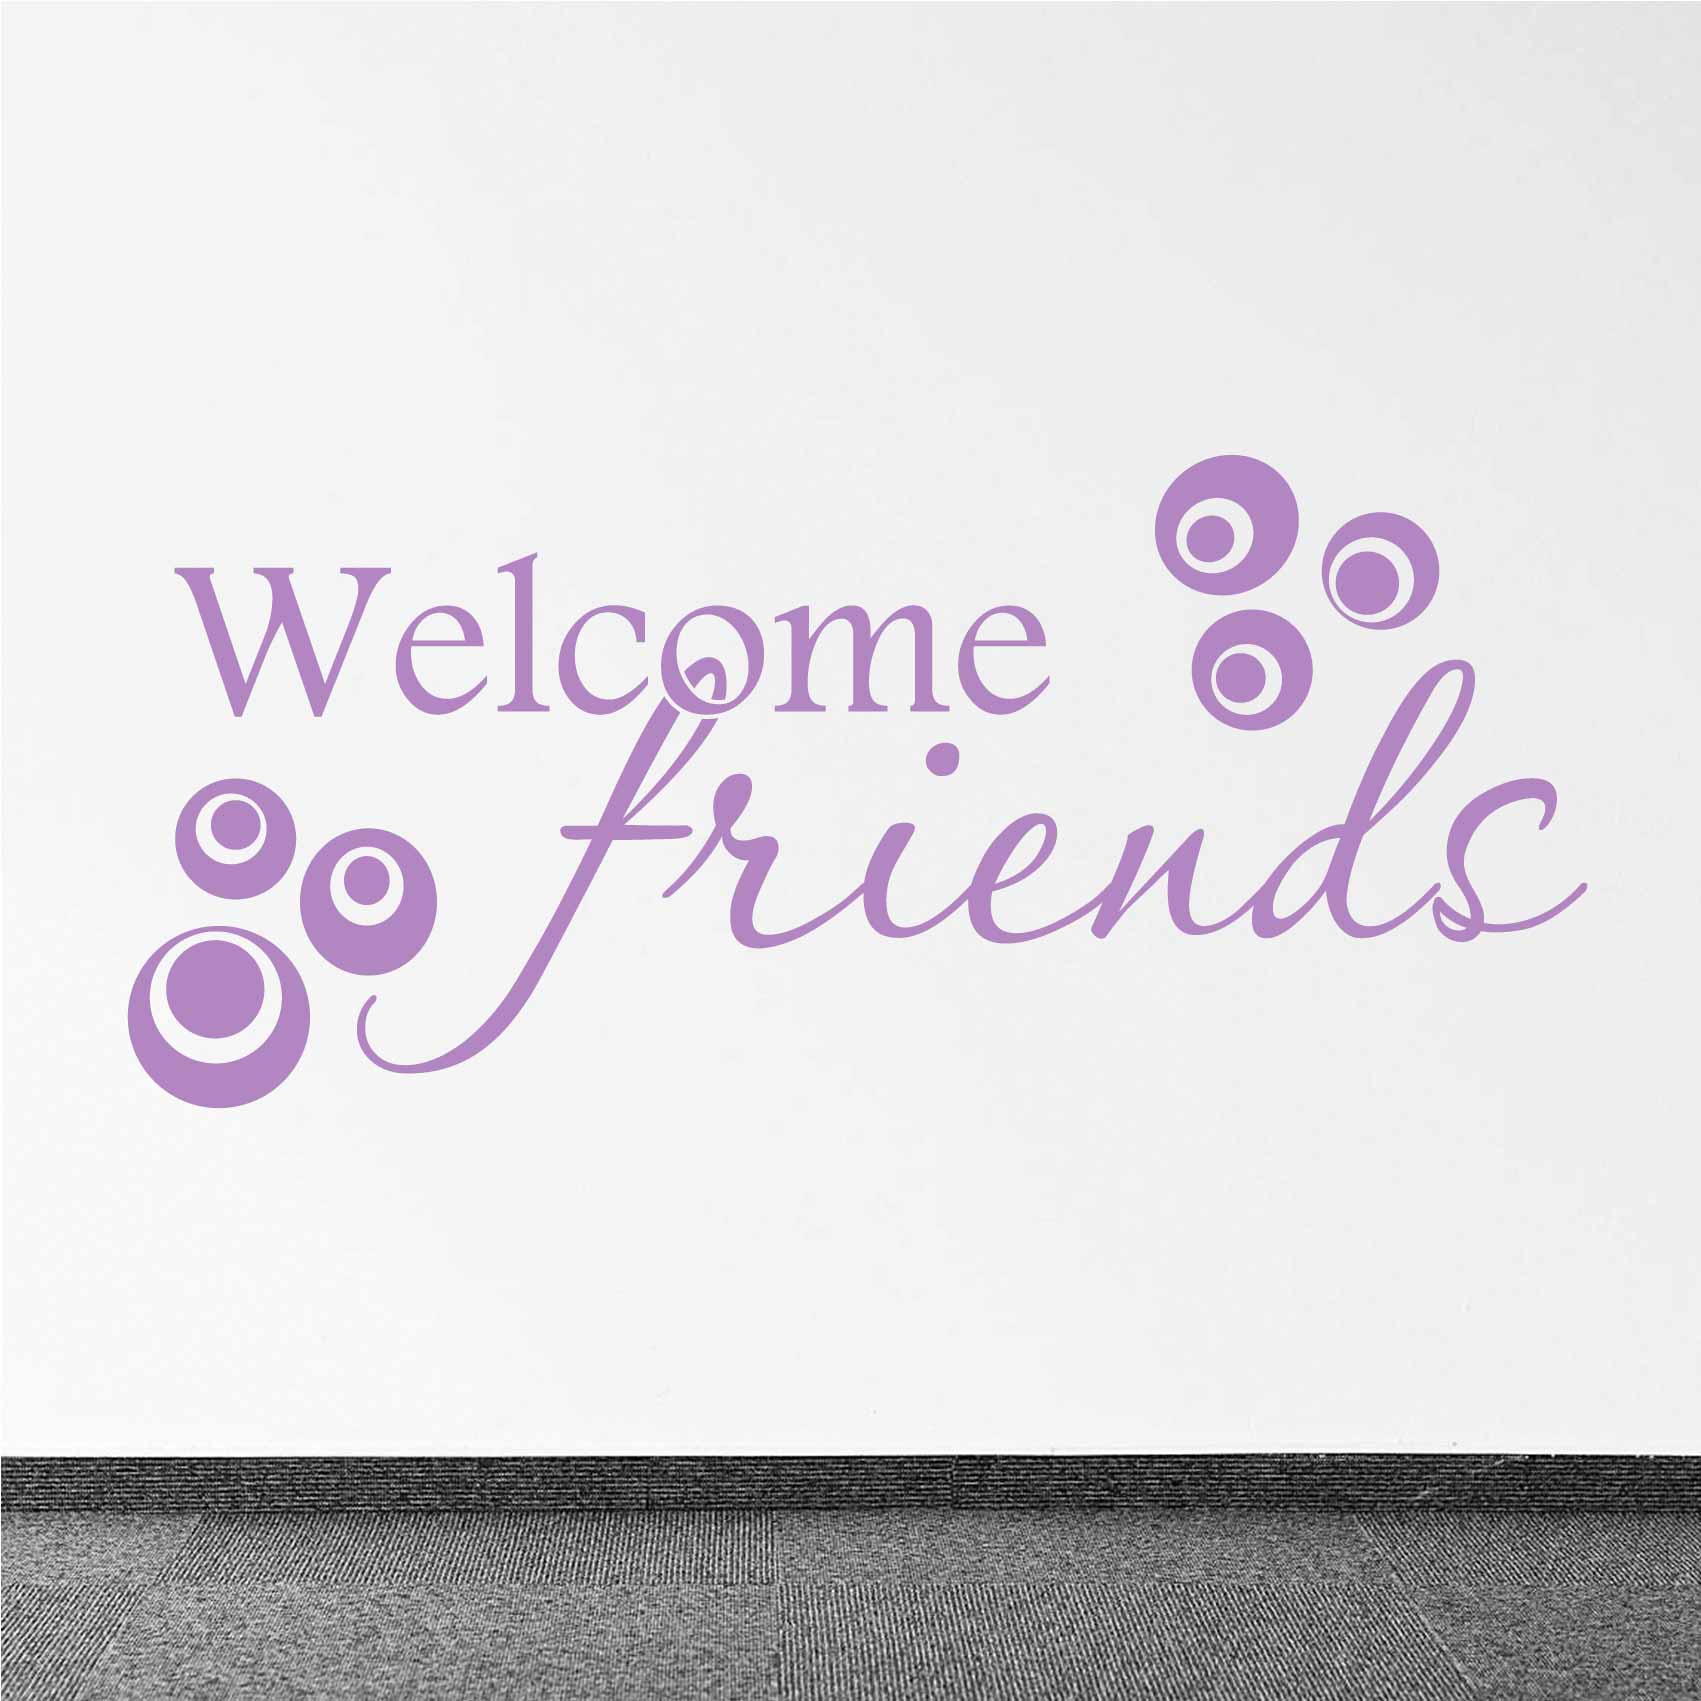 stickers-welcome-friends-ref16welcome-autocollant-muraux-bienvenue-sticker-mural-welcome-home-sweet-home-entrée-séjour-salon-cuisine-porte-deco